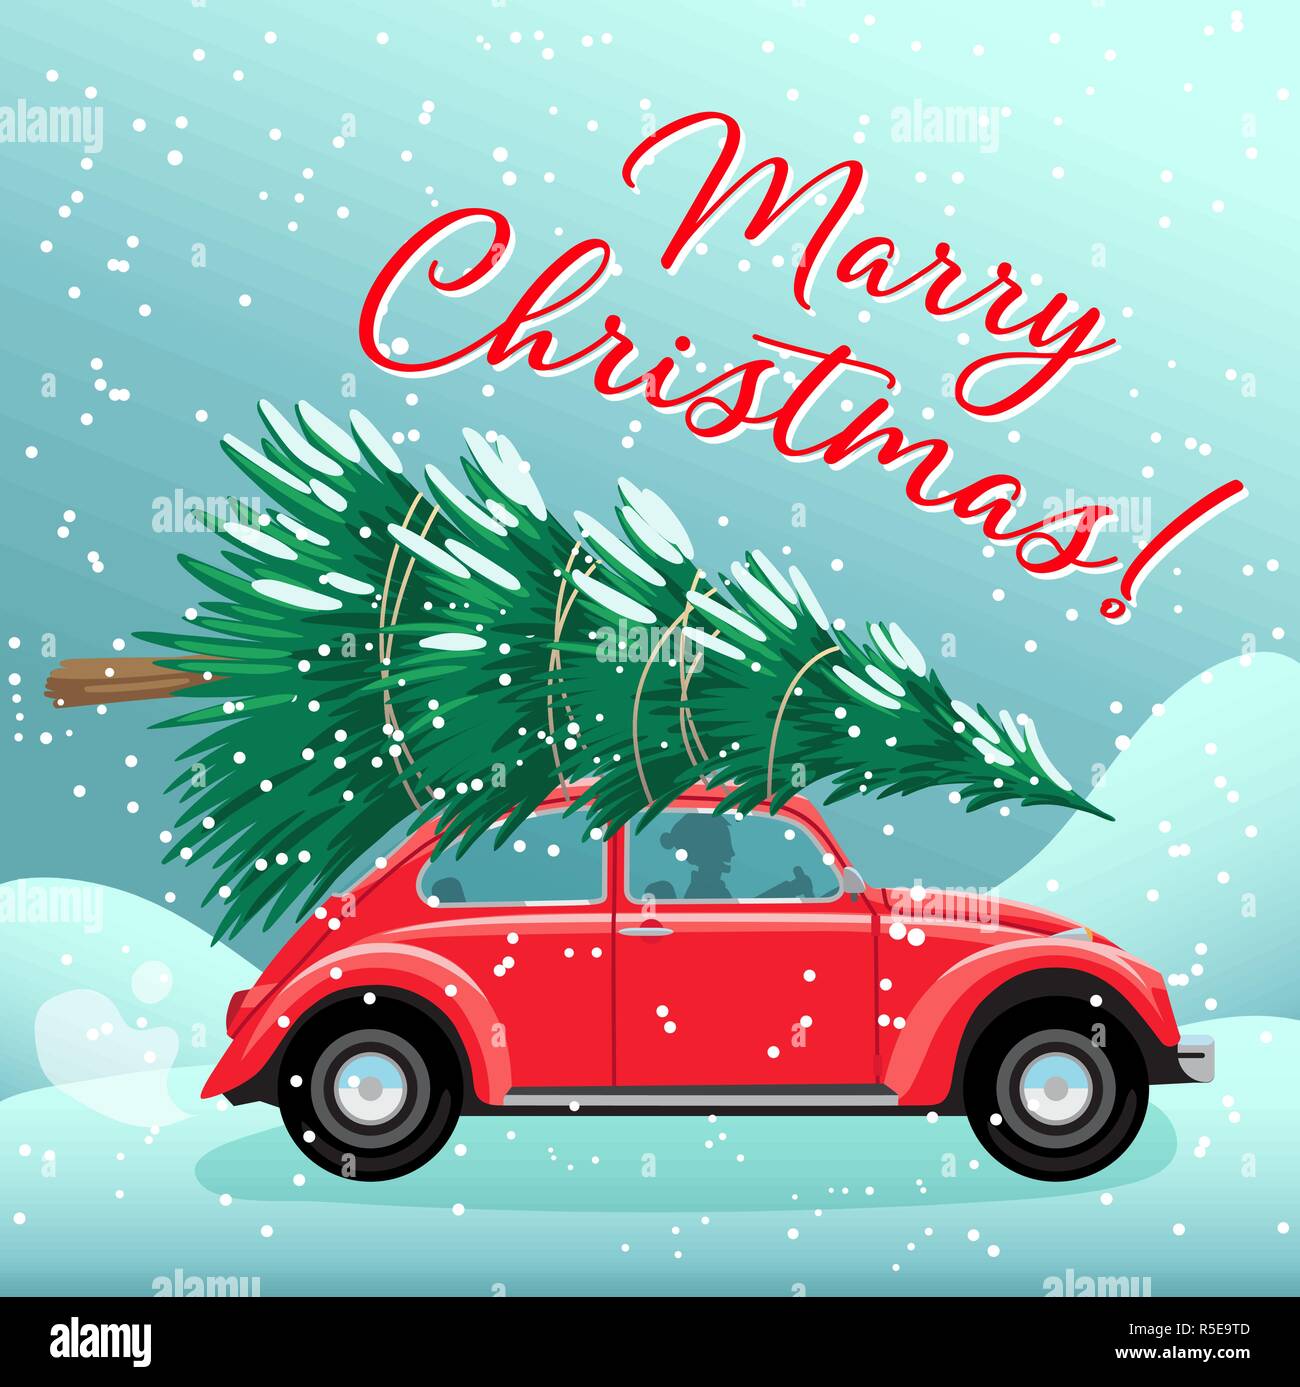 Buon Natale e Felice Anno Nuovo cartolina o un poster o un modello di flyer con retro rosso auto albero di natale sul tetto. In stile vintage illustrazione vettoriale Illustrazione Vettoriale